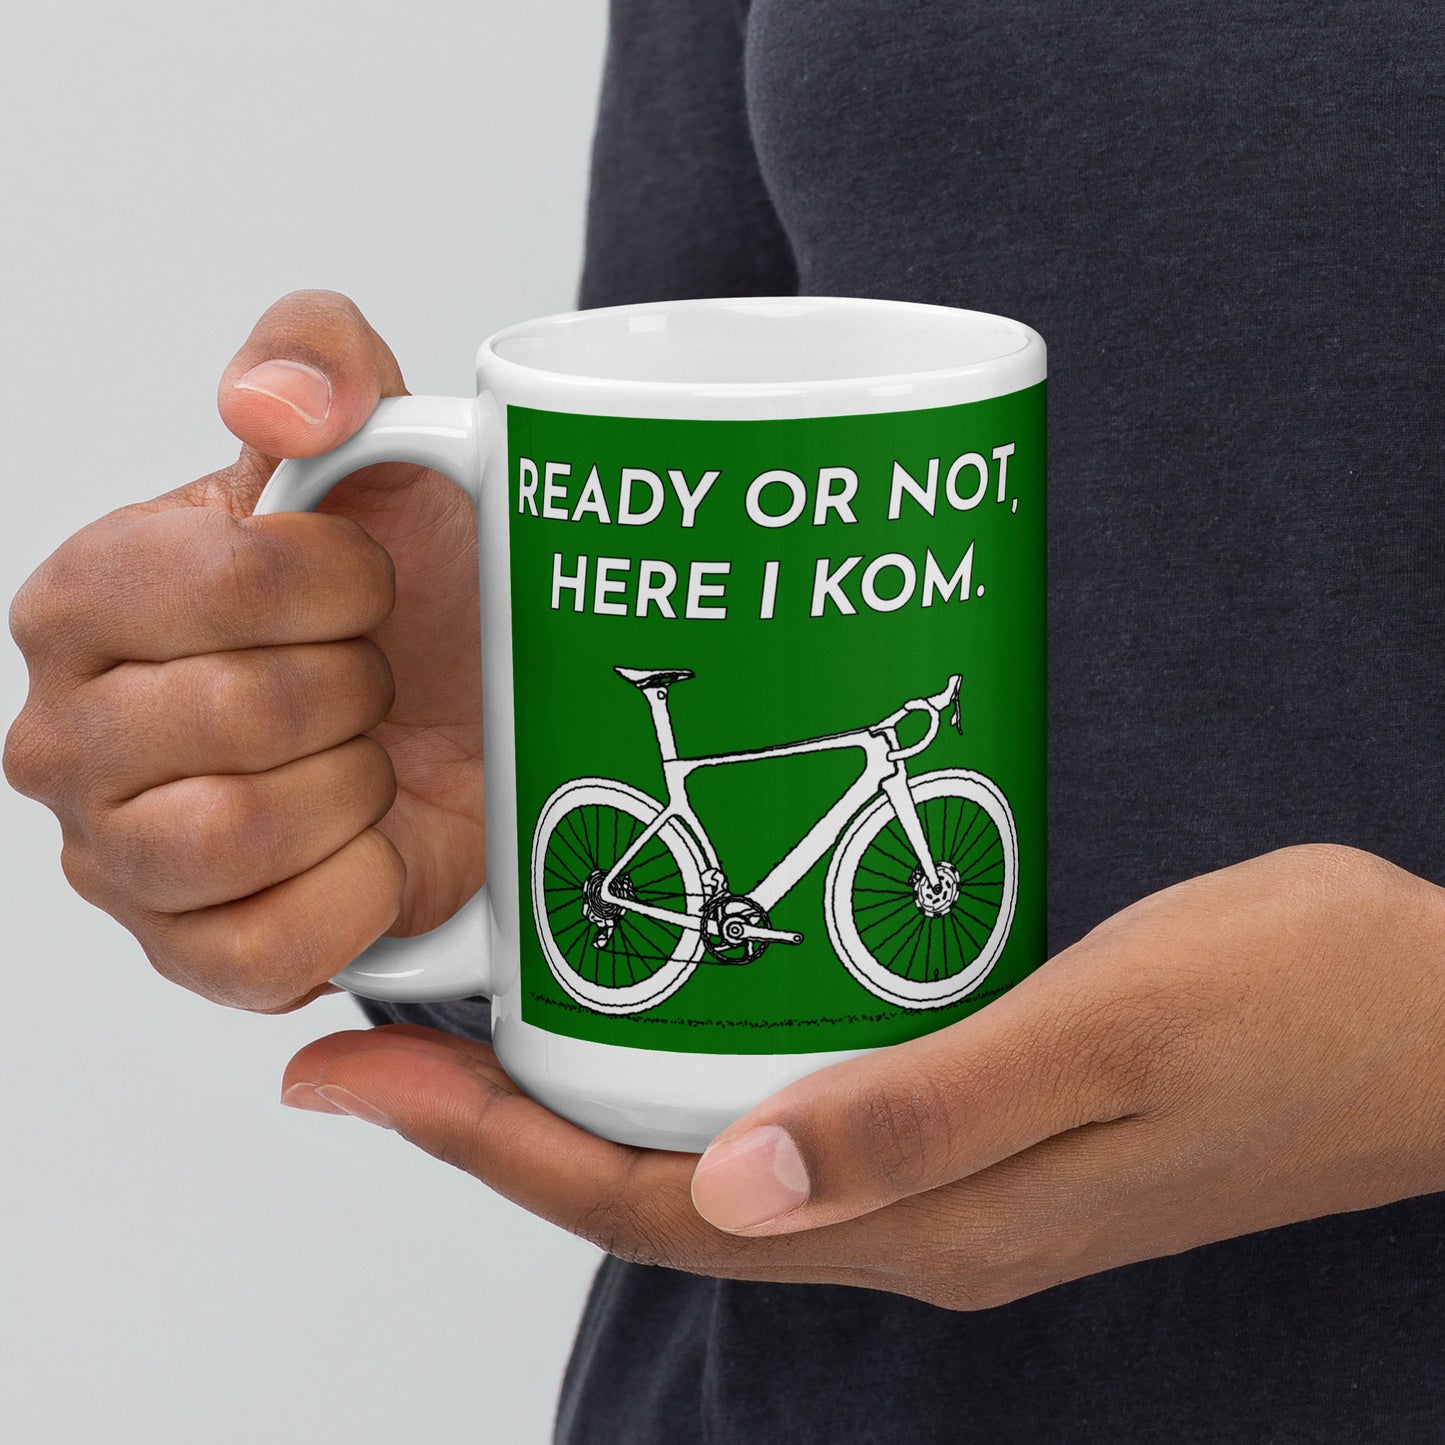 Ready Or Not Here I KOM, Green Road Bike Cyclist Mug